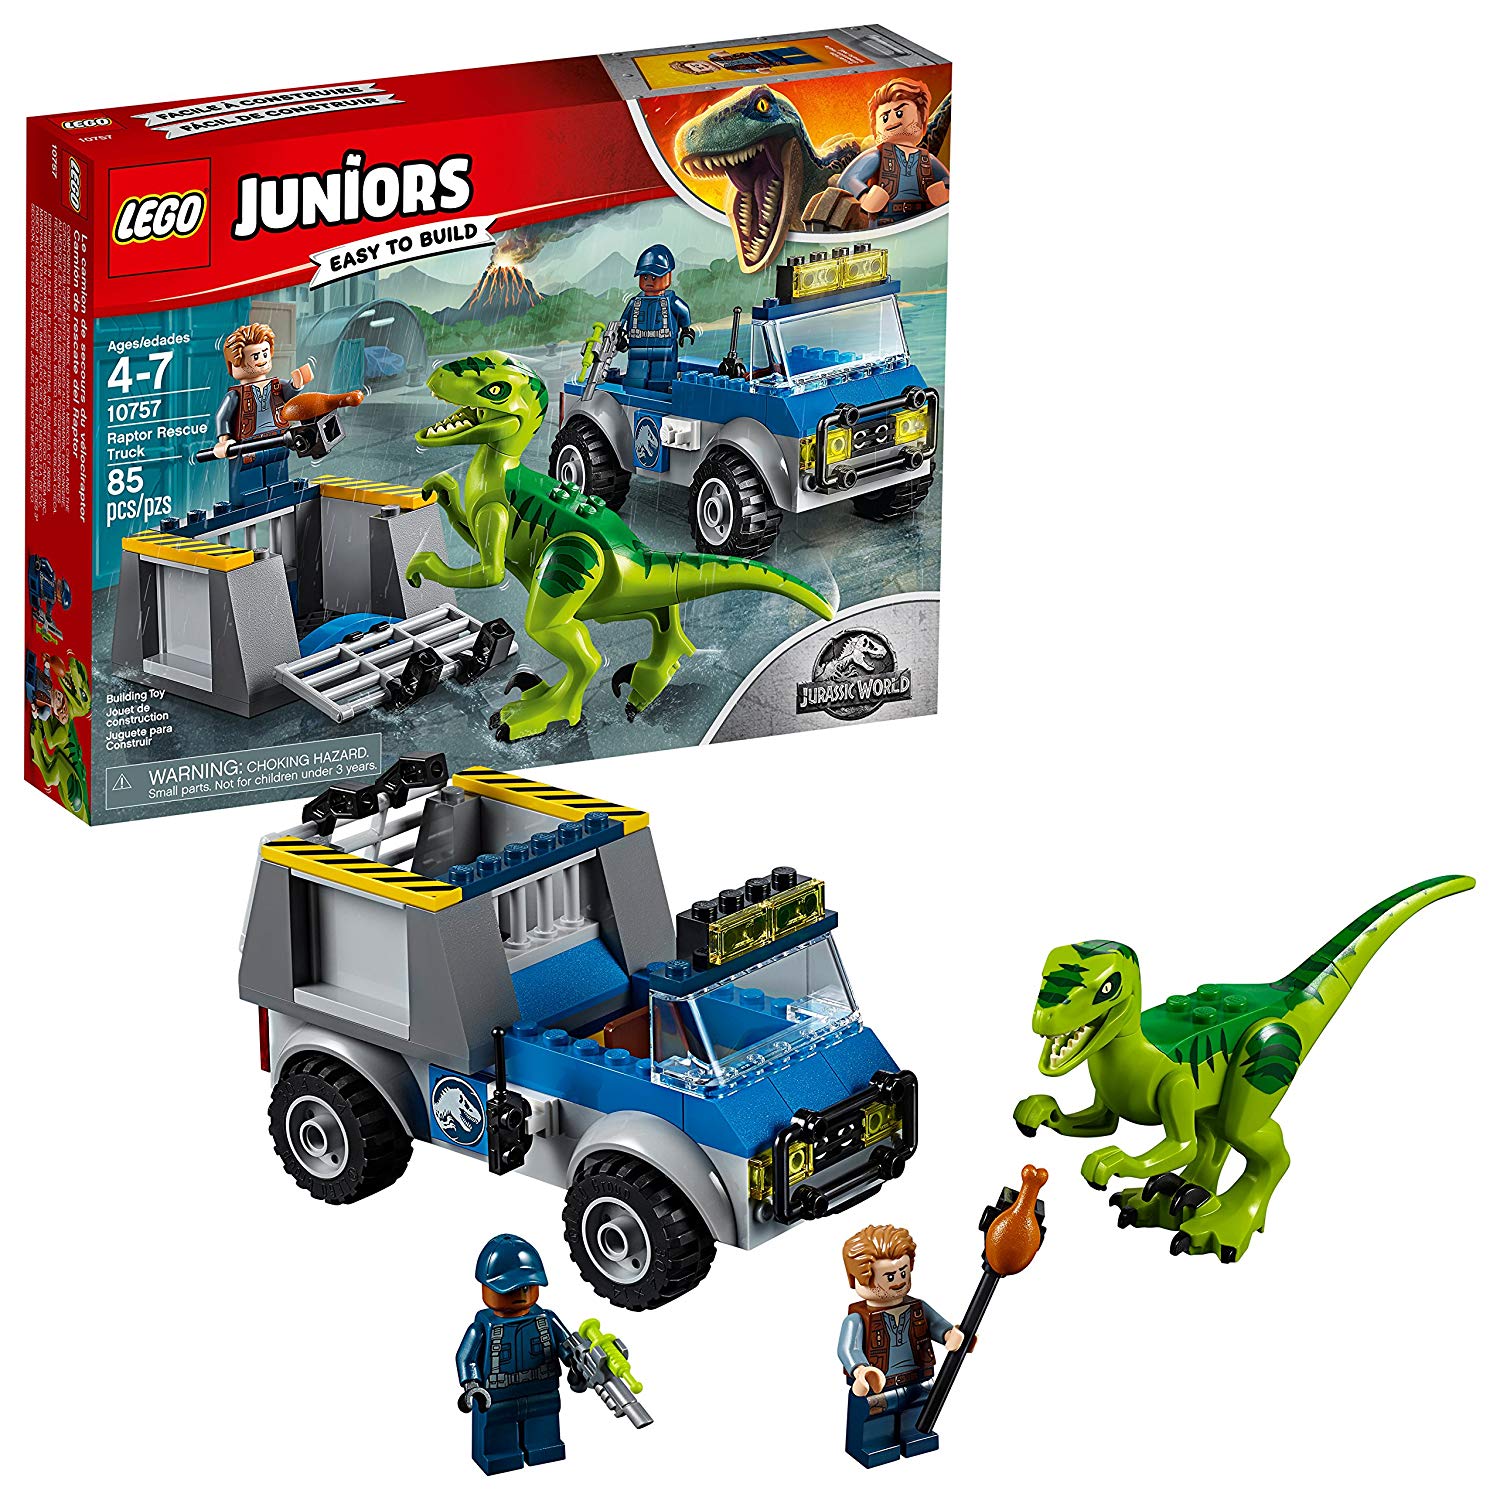 Lego Juniors Raptors Rescue Transporter Pieces